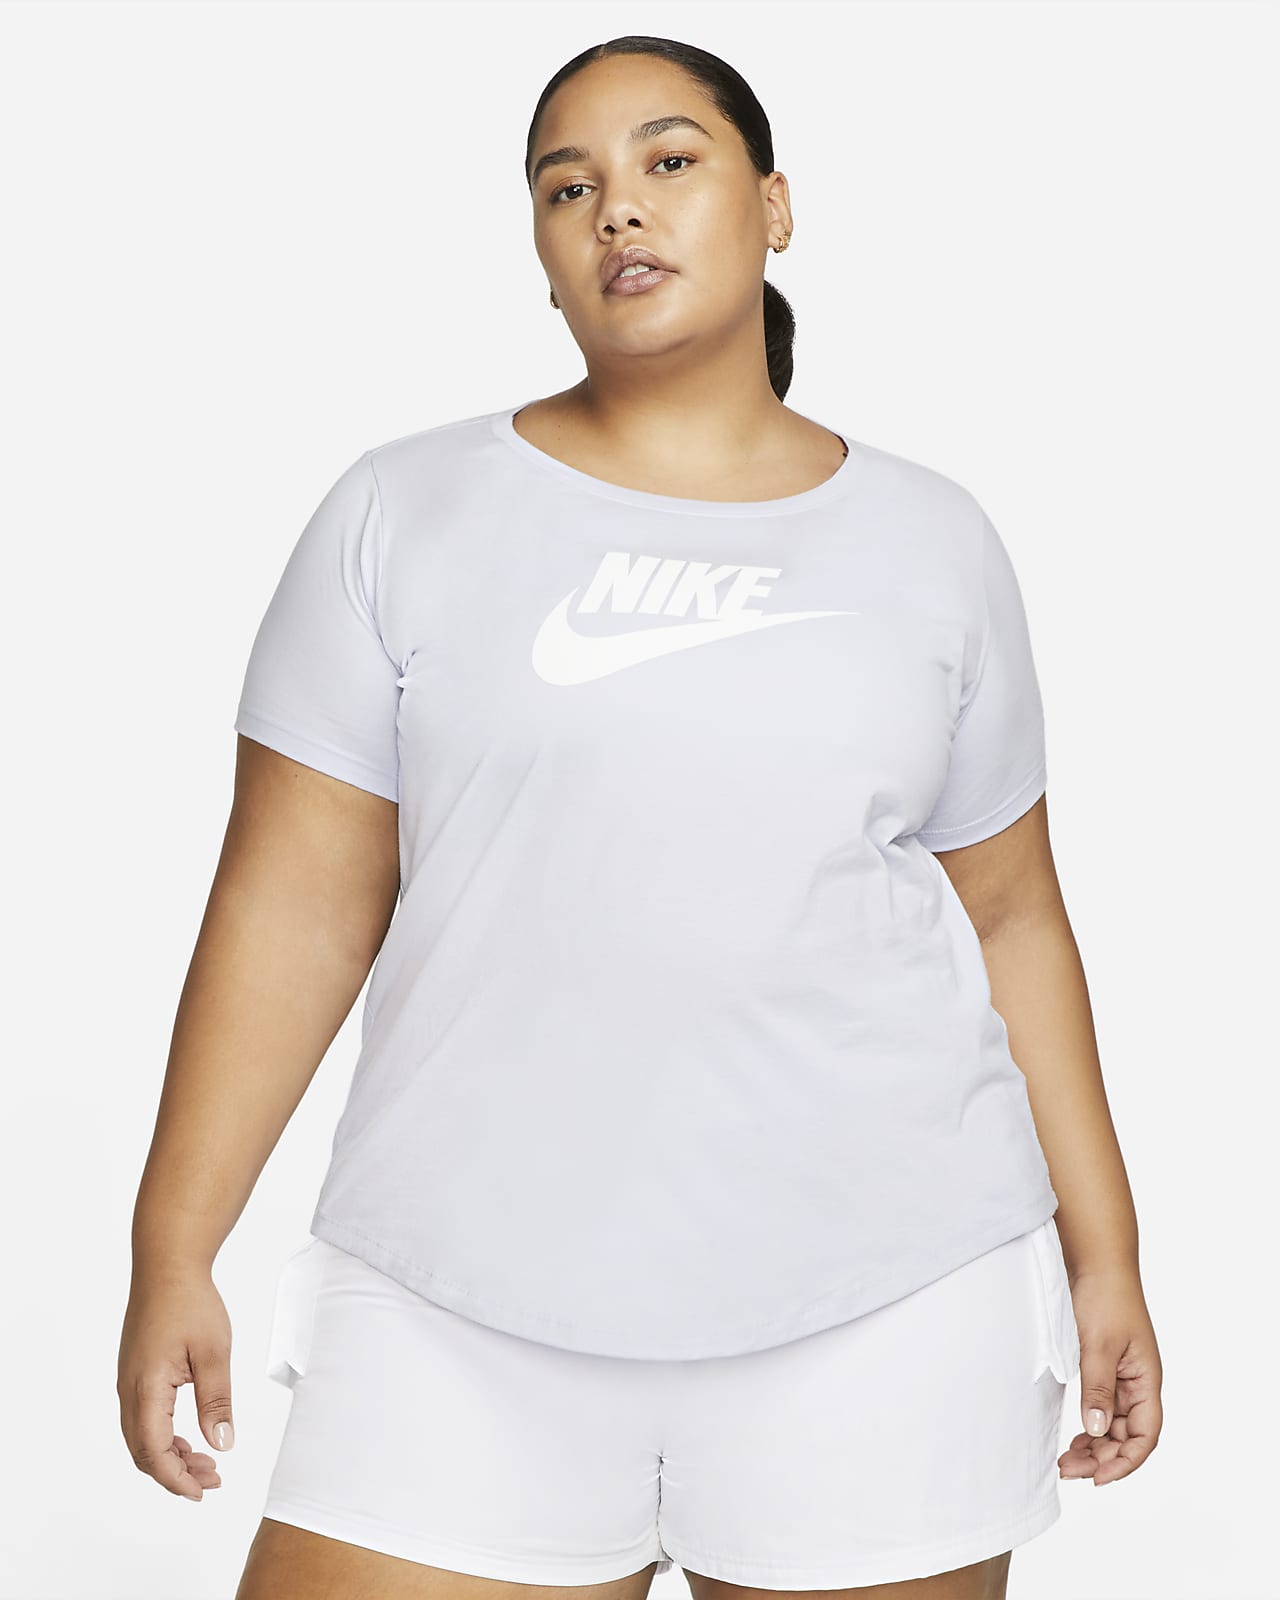 เสื้อยืดผู้หญิงมีโลโก้ Nike Sportswear Essentials (พลัสไซส์)